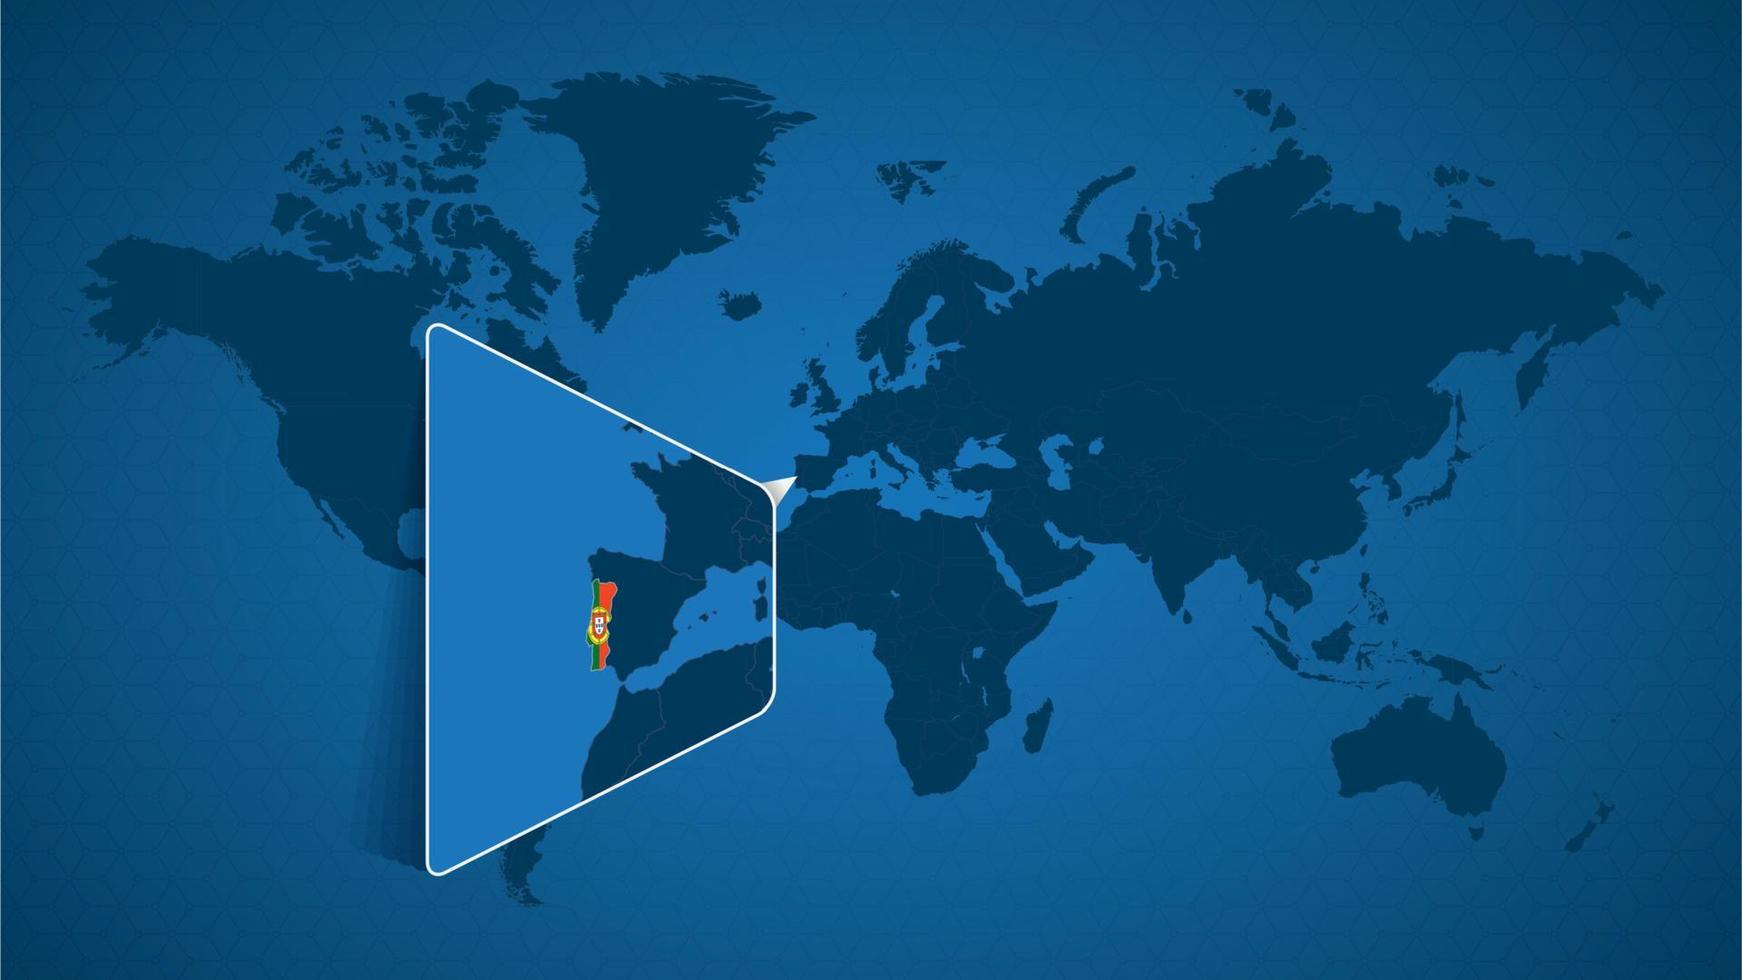 mappa del mondo dettagliata con mappa ingrandita appuntata del Portogallo e dei paesi vicini. vettore